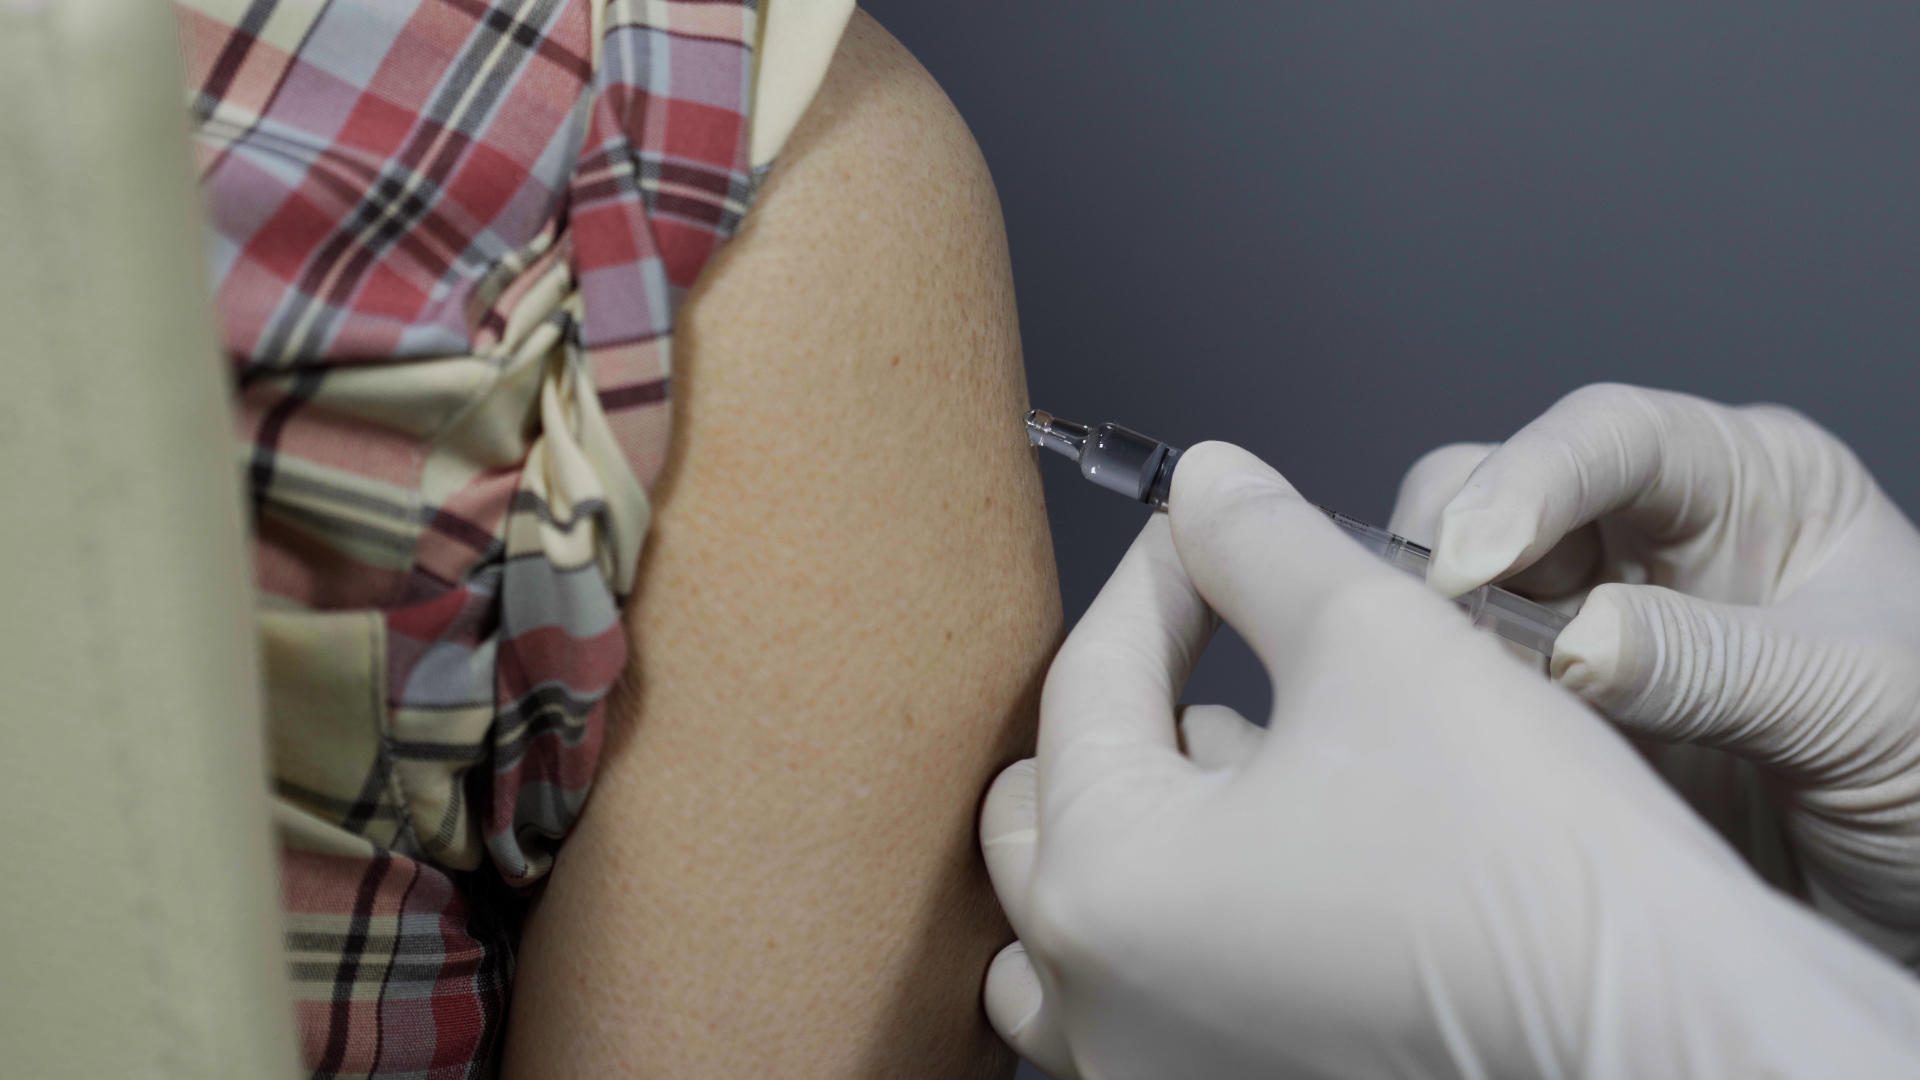 Hoitaja antaa rokotusta käsivarteen